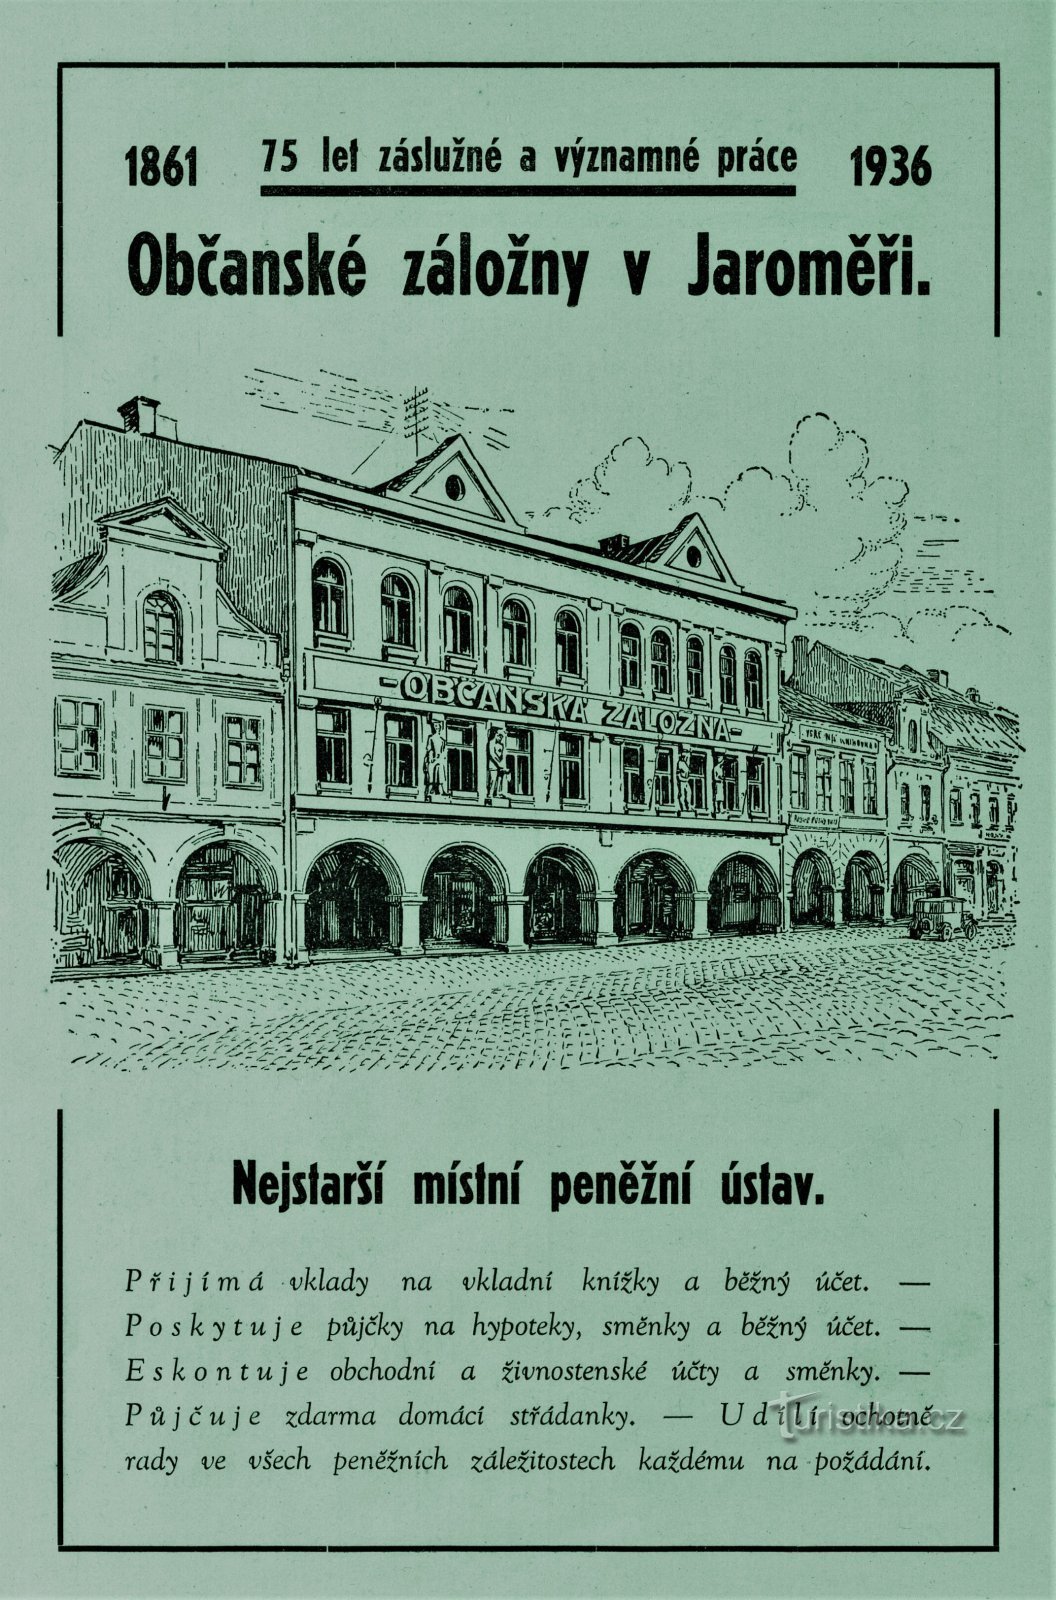 1936 年在 Jaroměř 市民储蓄银行的当代广告